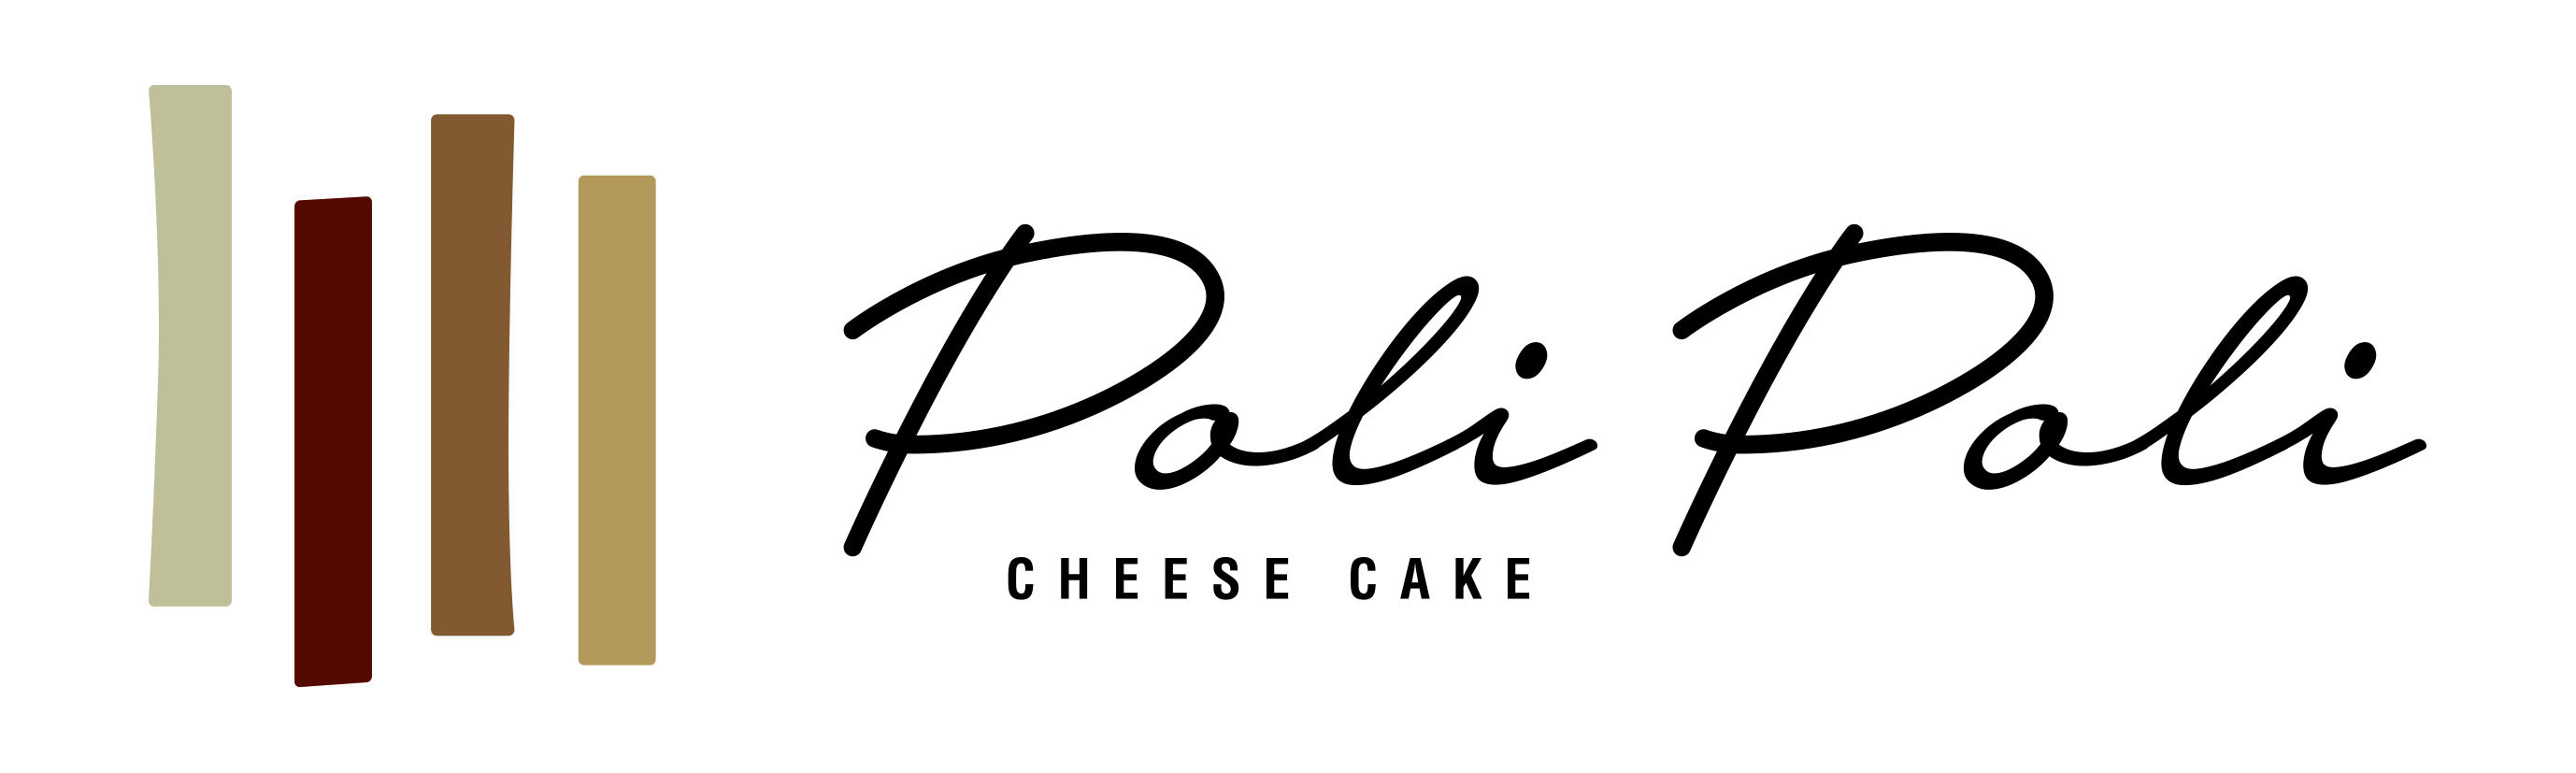 チーズケーキと焼菓子の店Poli-Poli